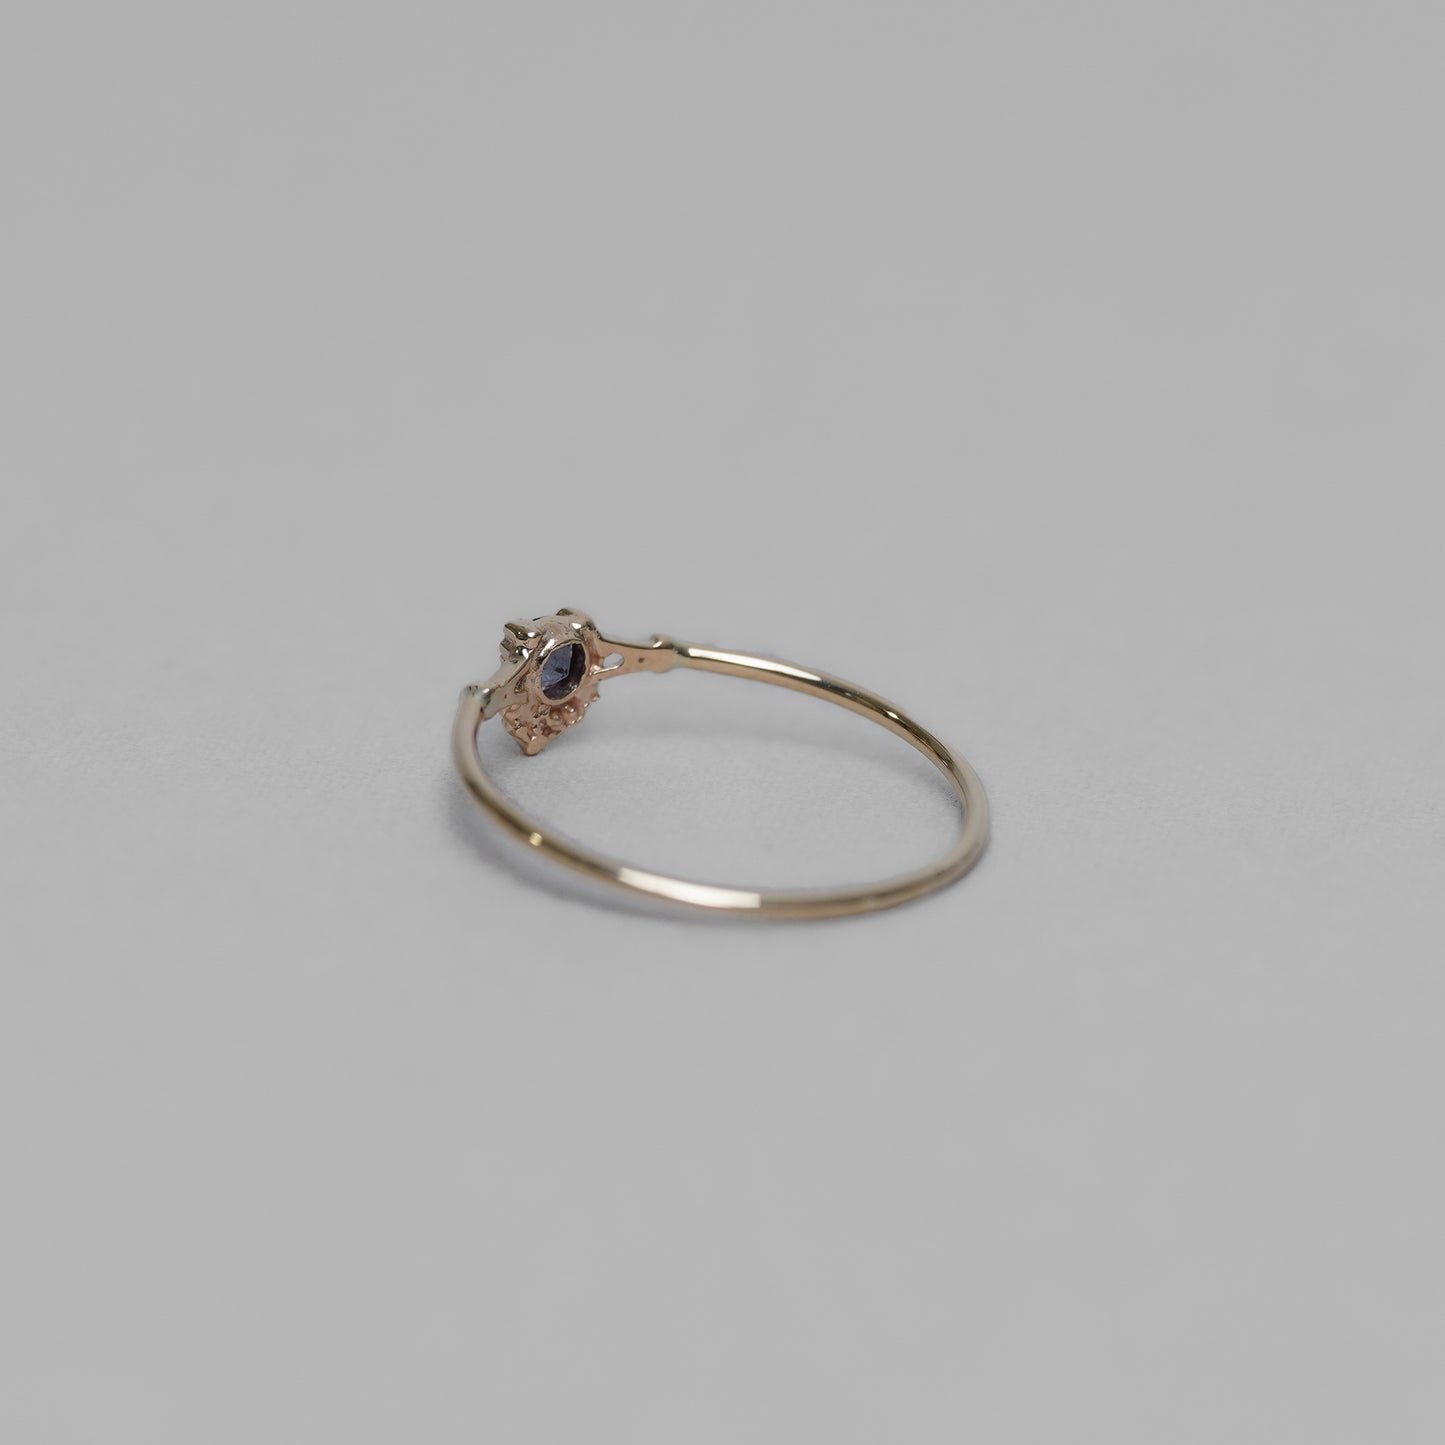 1696  Color Change Garnet  / Ring